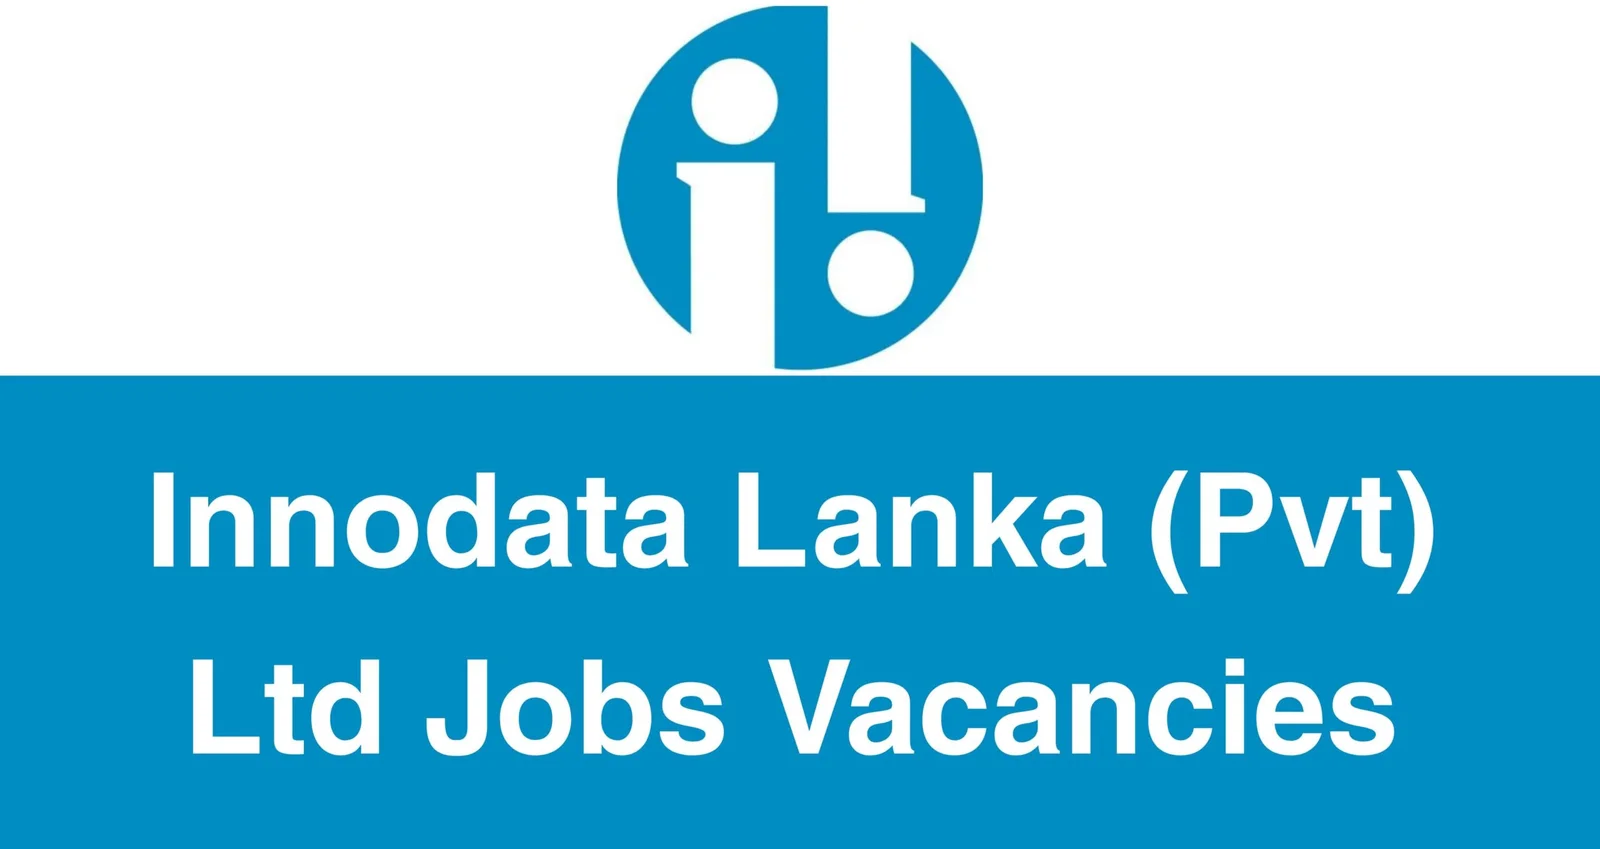 Innodata Lanka (Pvt) Ltd Jobs Vacancies